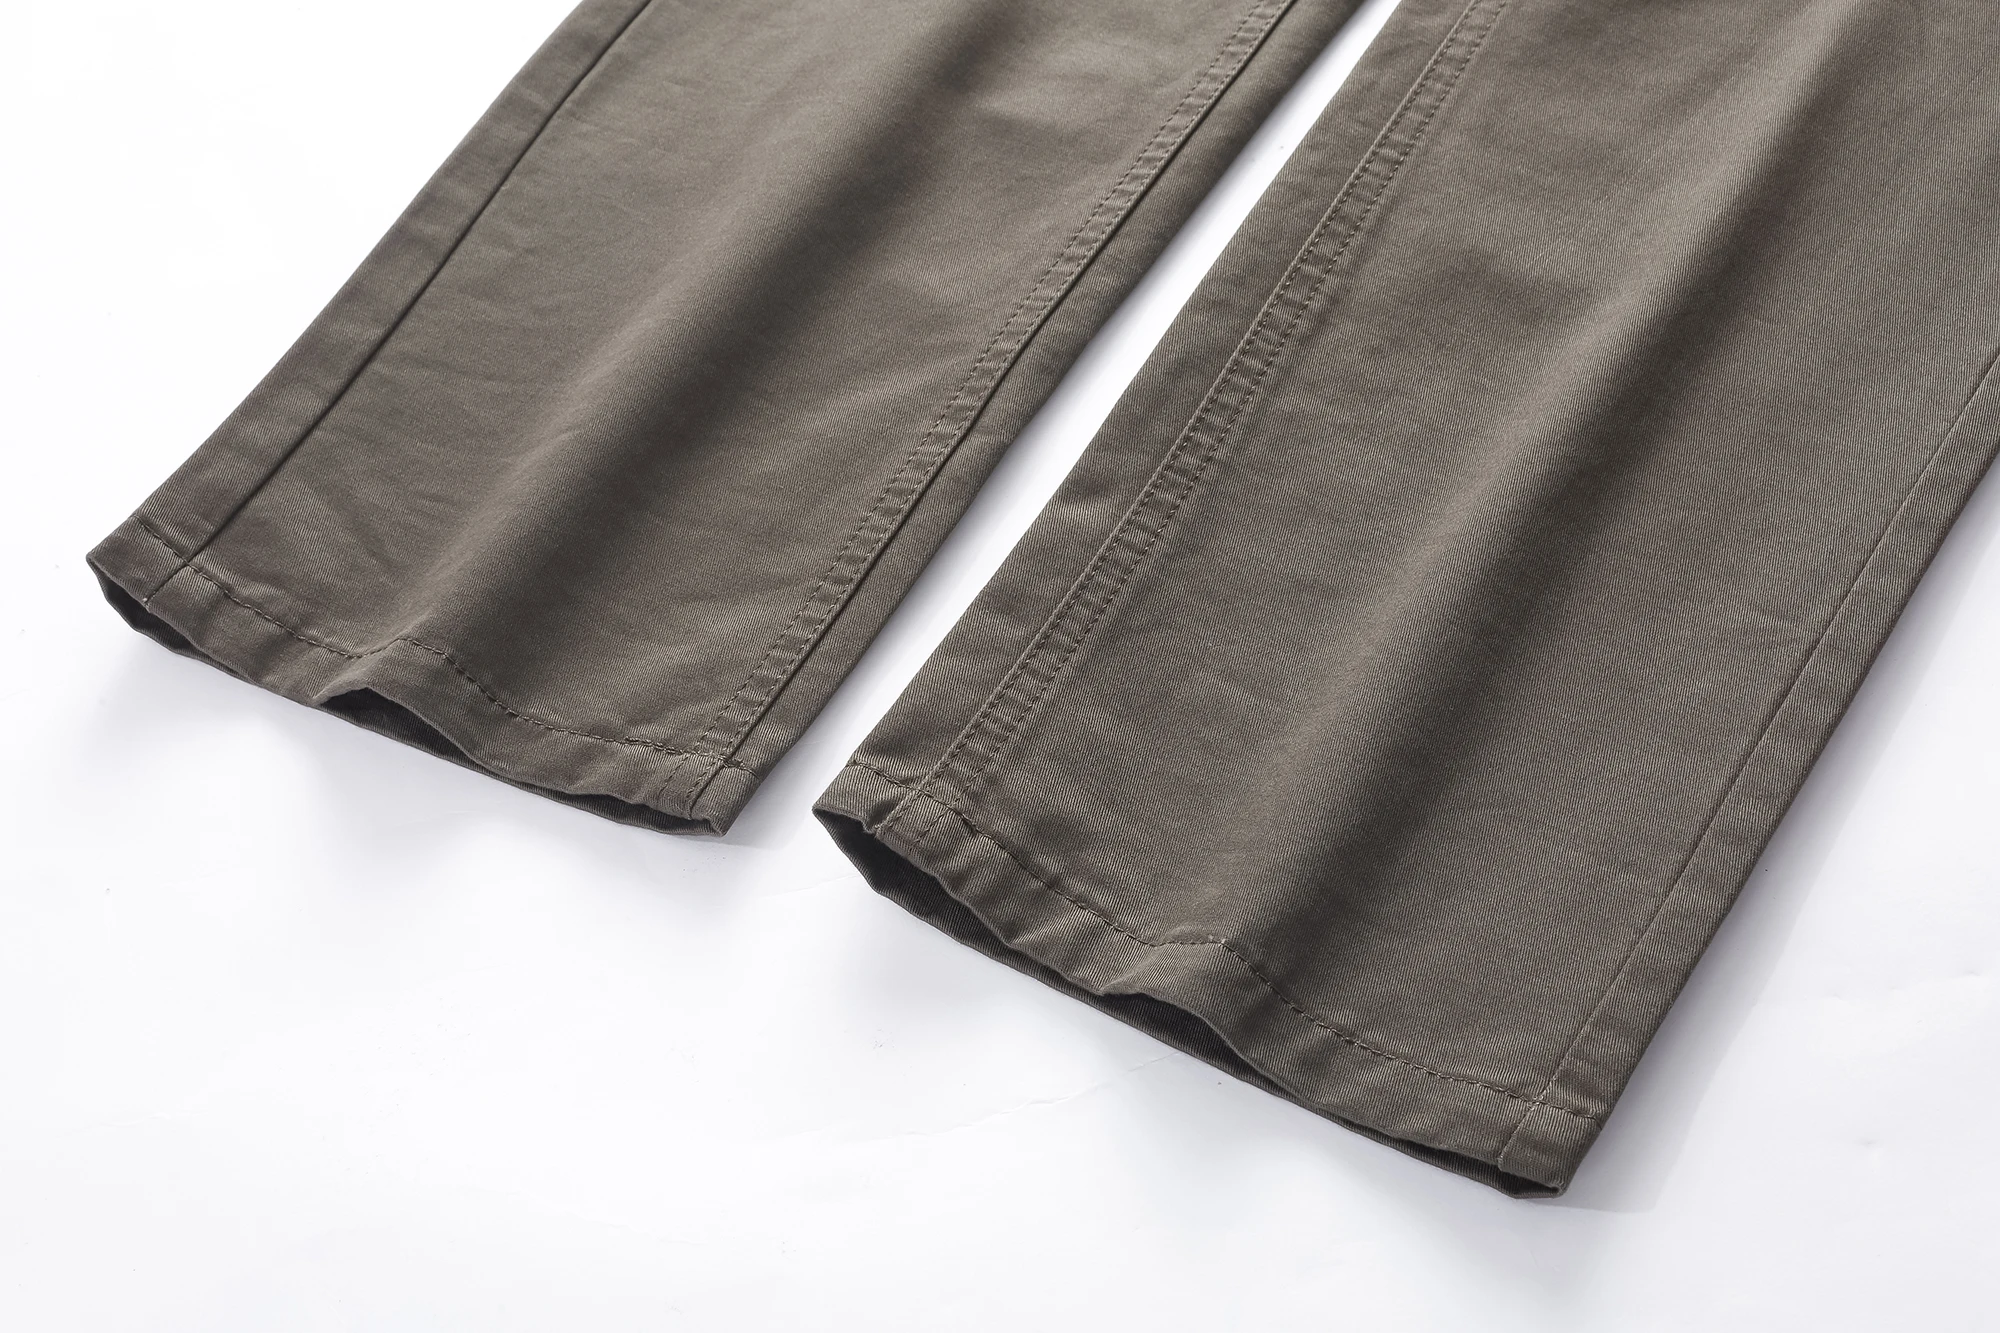 Wholesale Men Pants - Buy Men Pants,Men's Trousers Pants,Pants Product ...